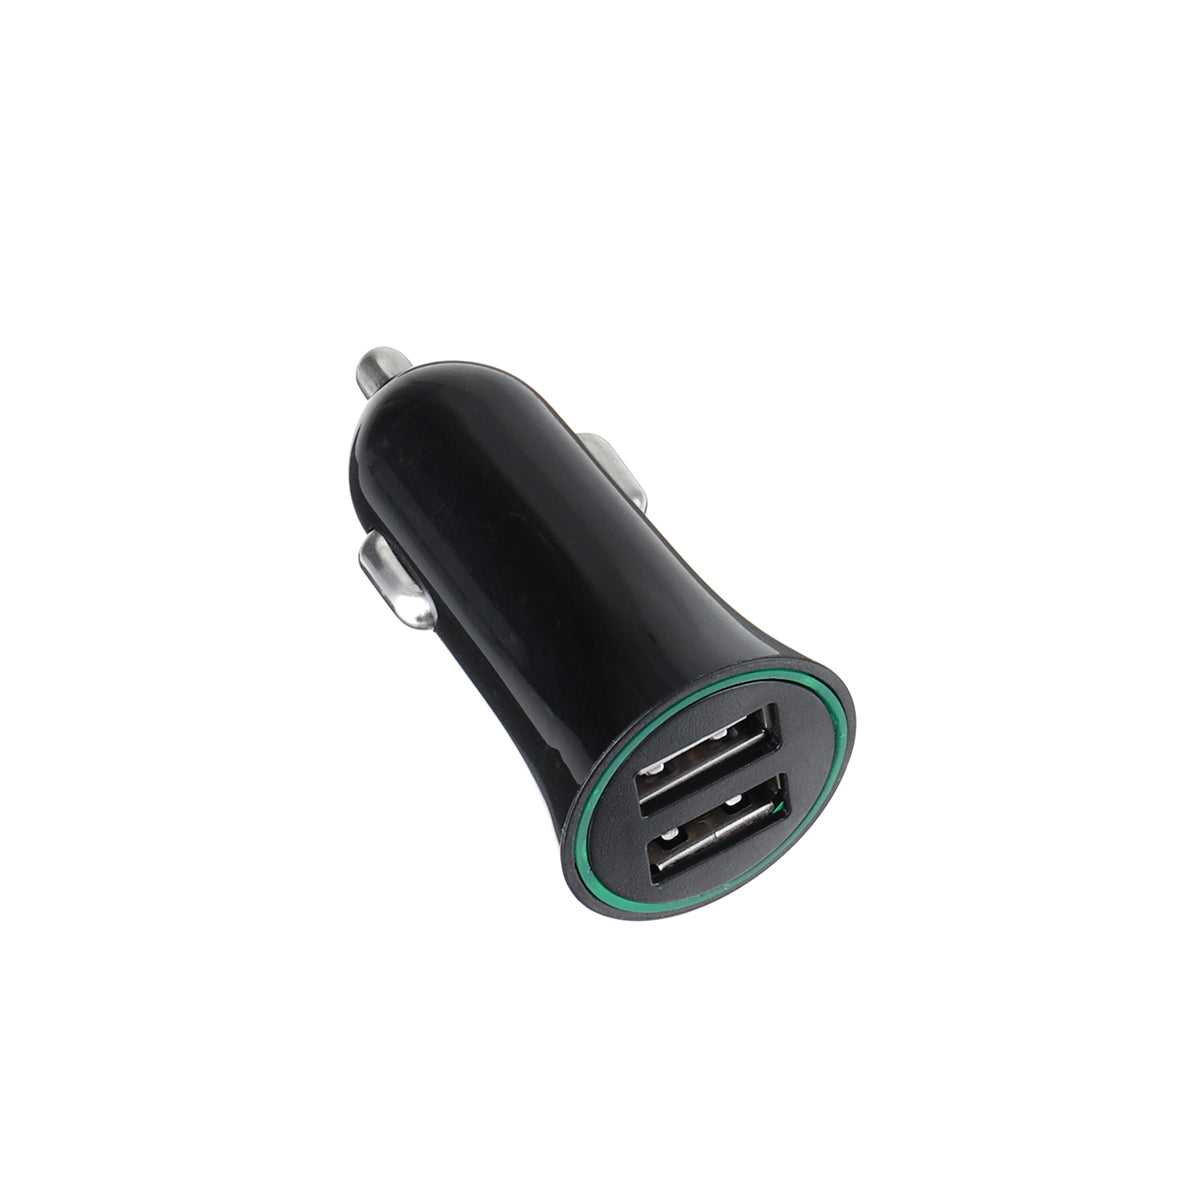 Black Car DAB/DAB+ Receiver Digital Radio Adapter bluetooth FM Hands-free AUX USB